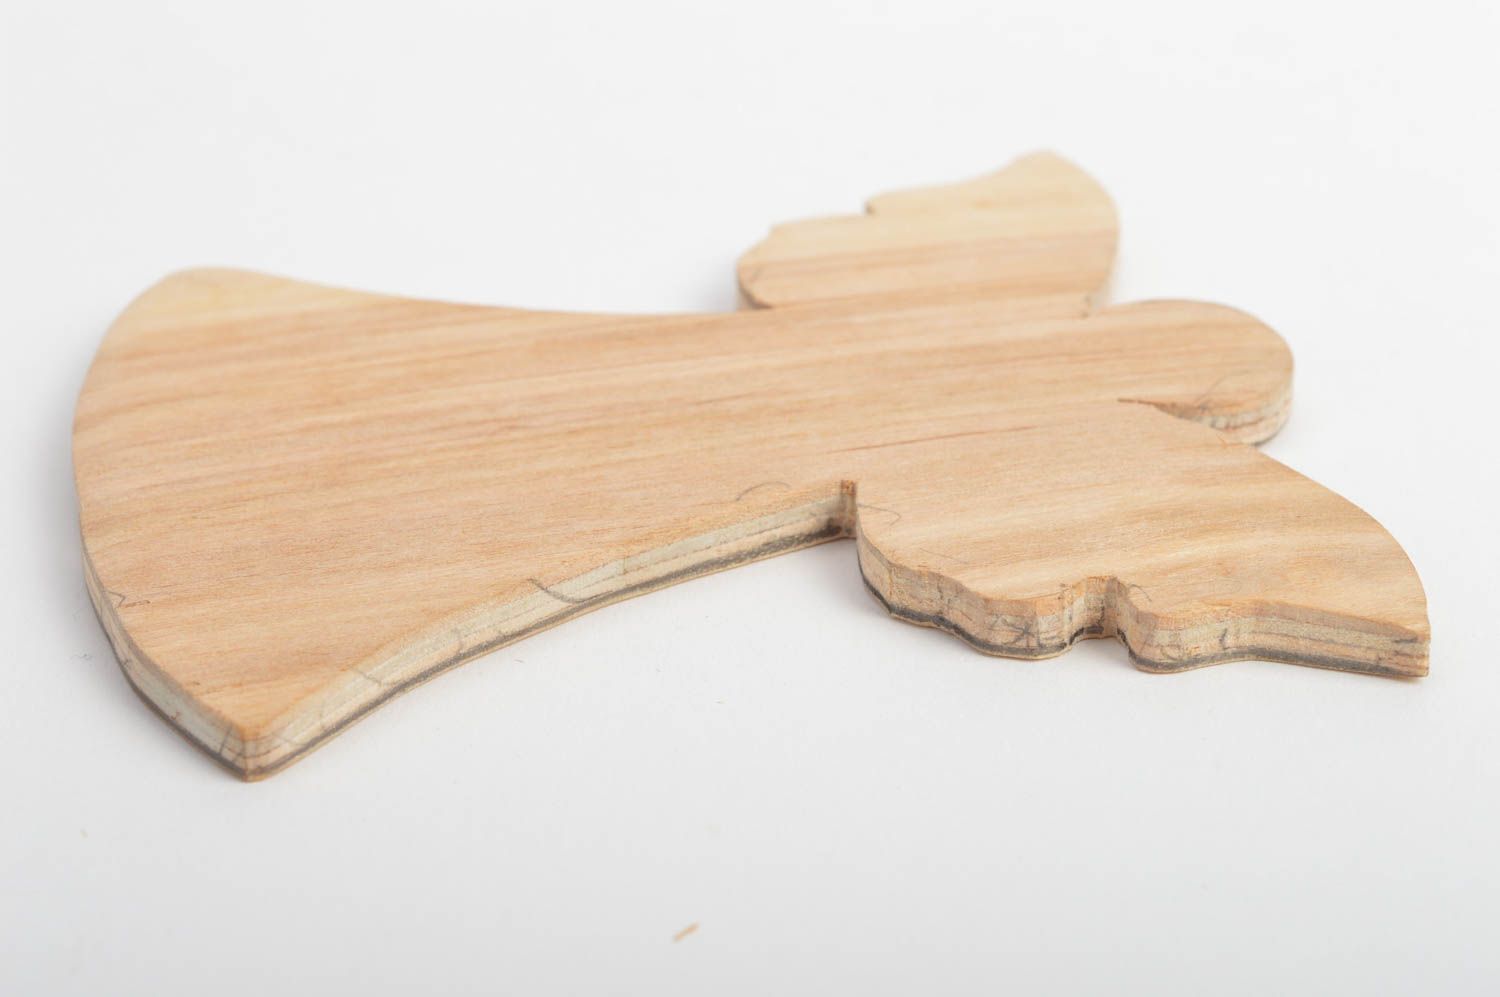 Kleiner künstlerischer Holz Rohling zum Bemalen schön interessant handgefertigt foto 5